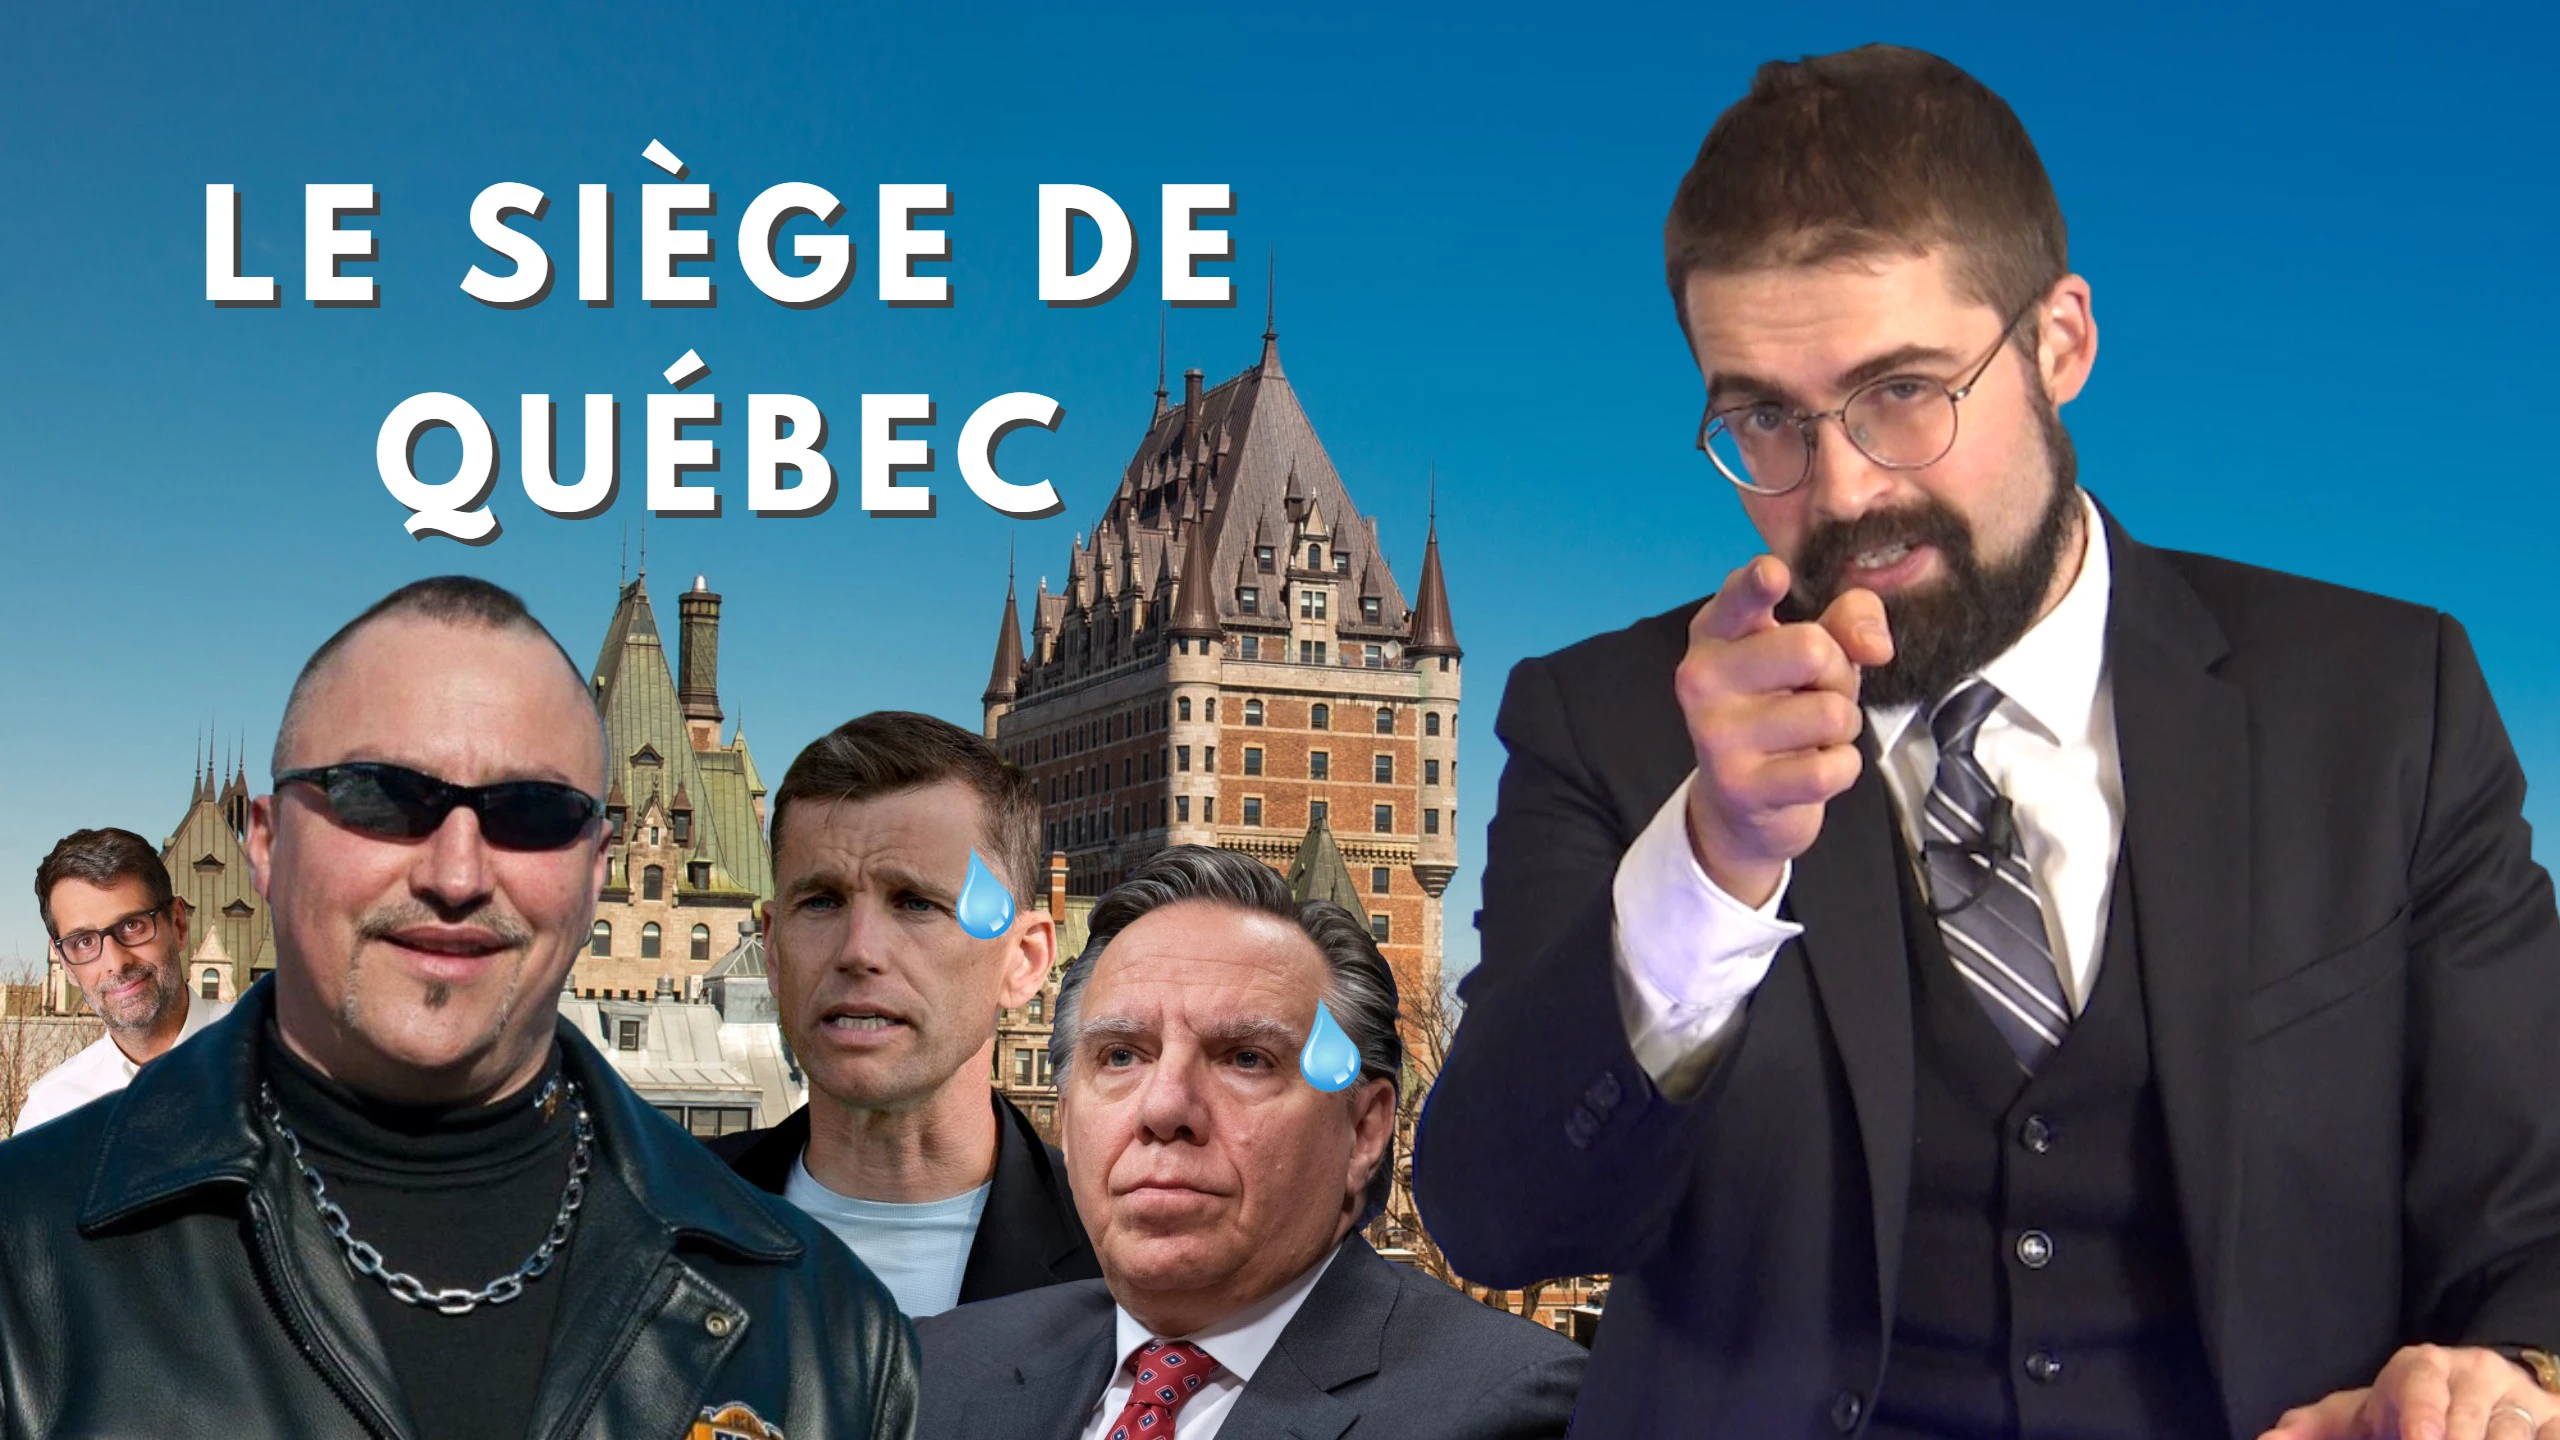 Le siège de Québec [EN DIRECT]